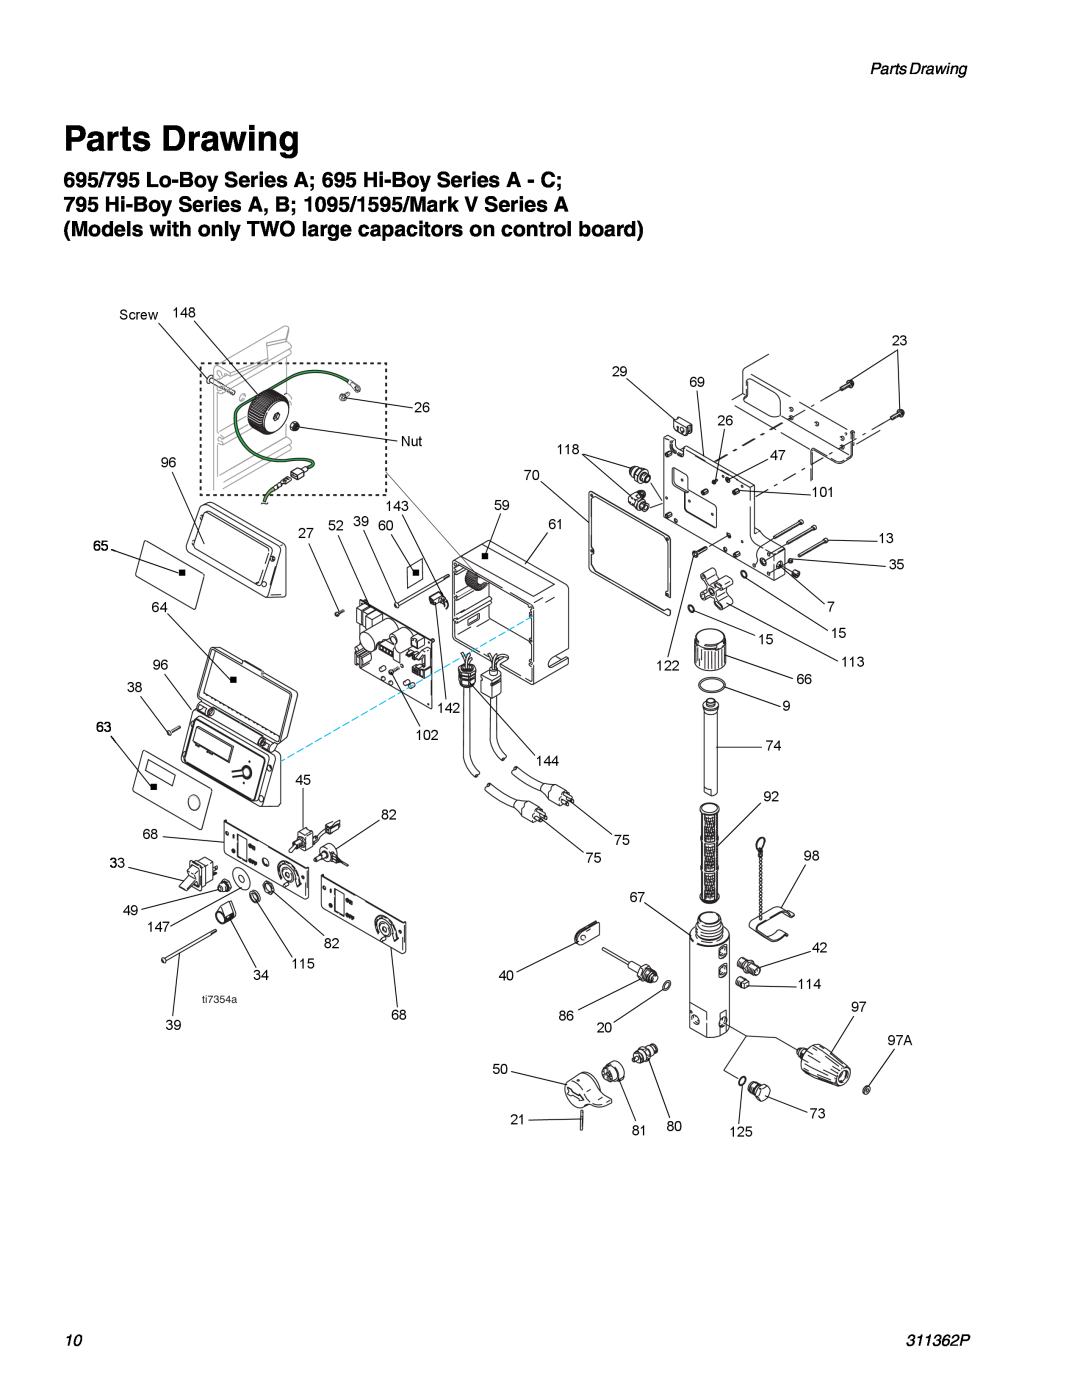 Graco Inc 1095, 1595 manual Parts Drawing, 695/795 Lo-Boy Series A 695 Hi-Boy Series A - C 